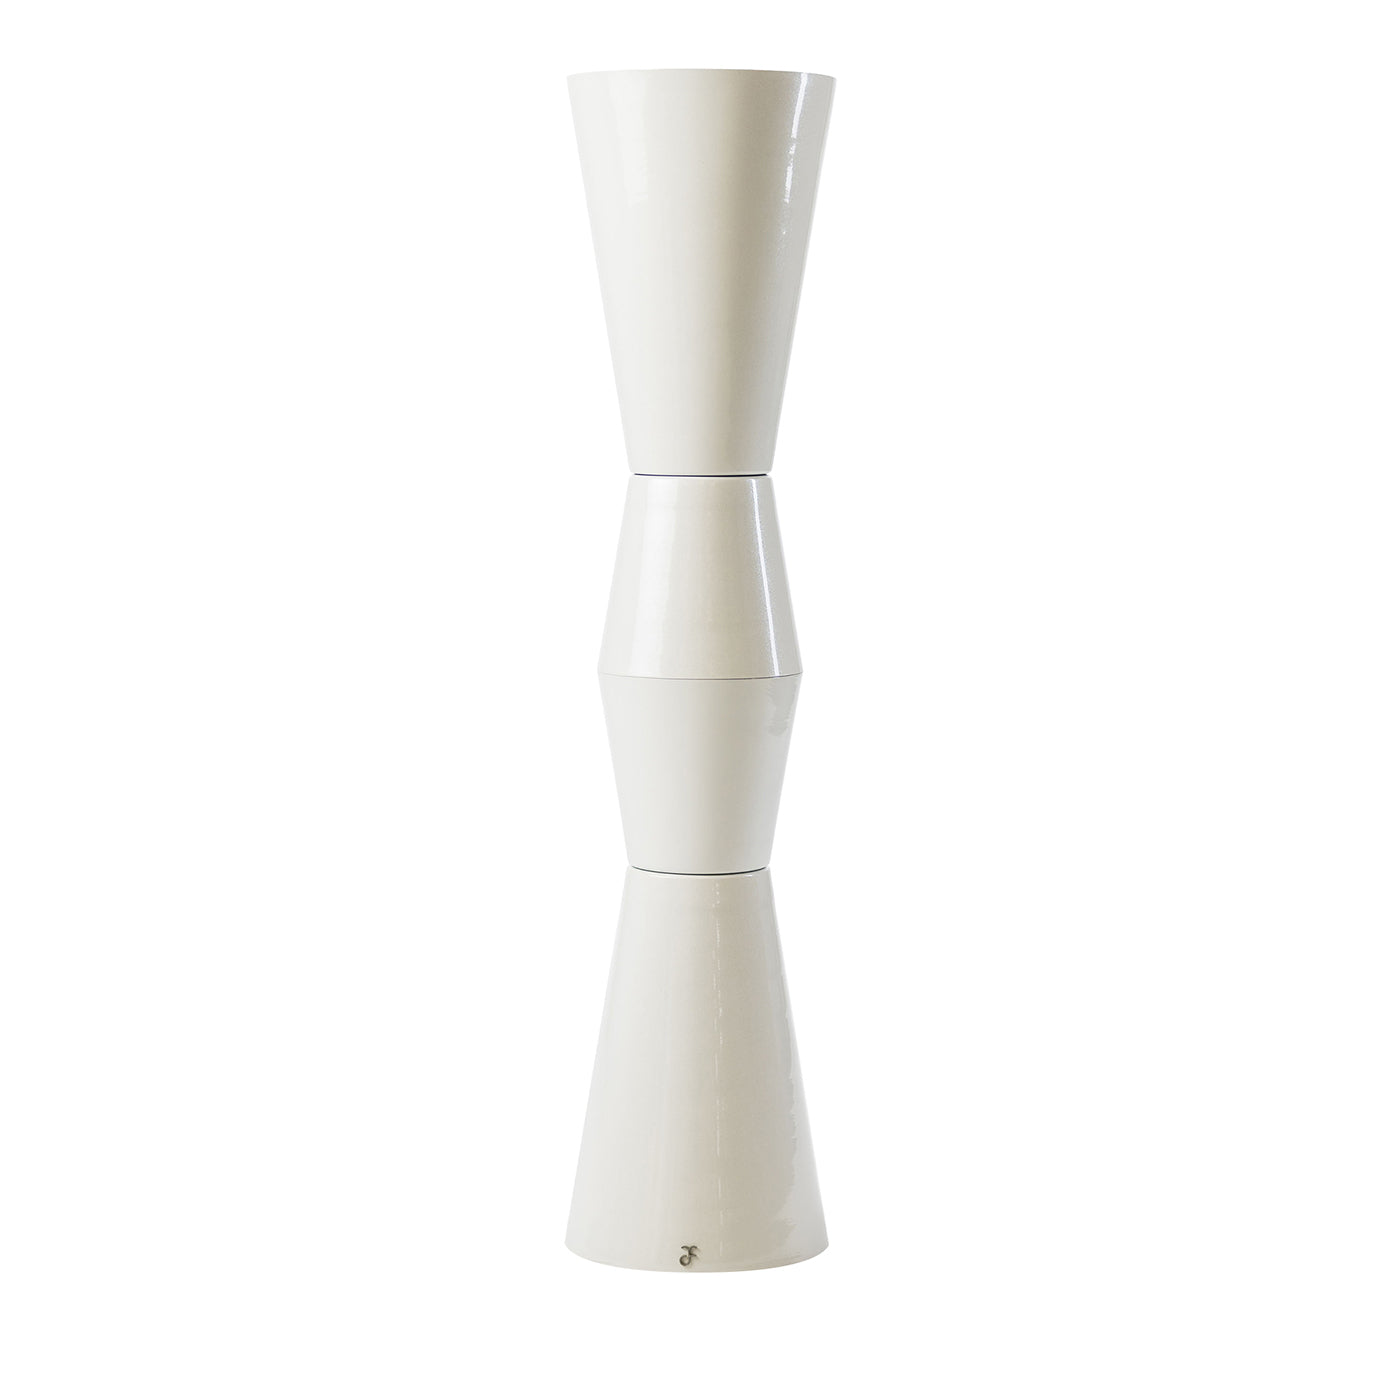 Lampe Ulus 90 blanche de Marco Piva - Vue principale